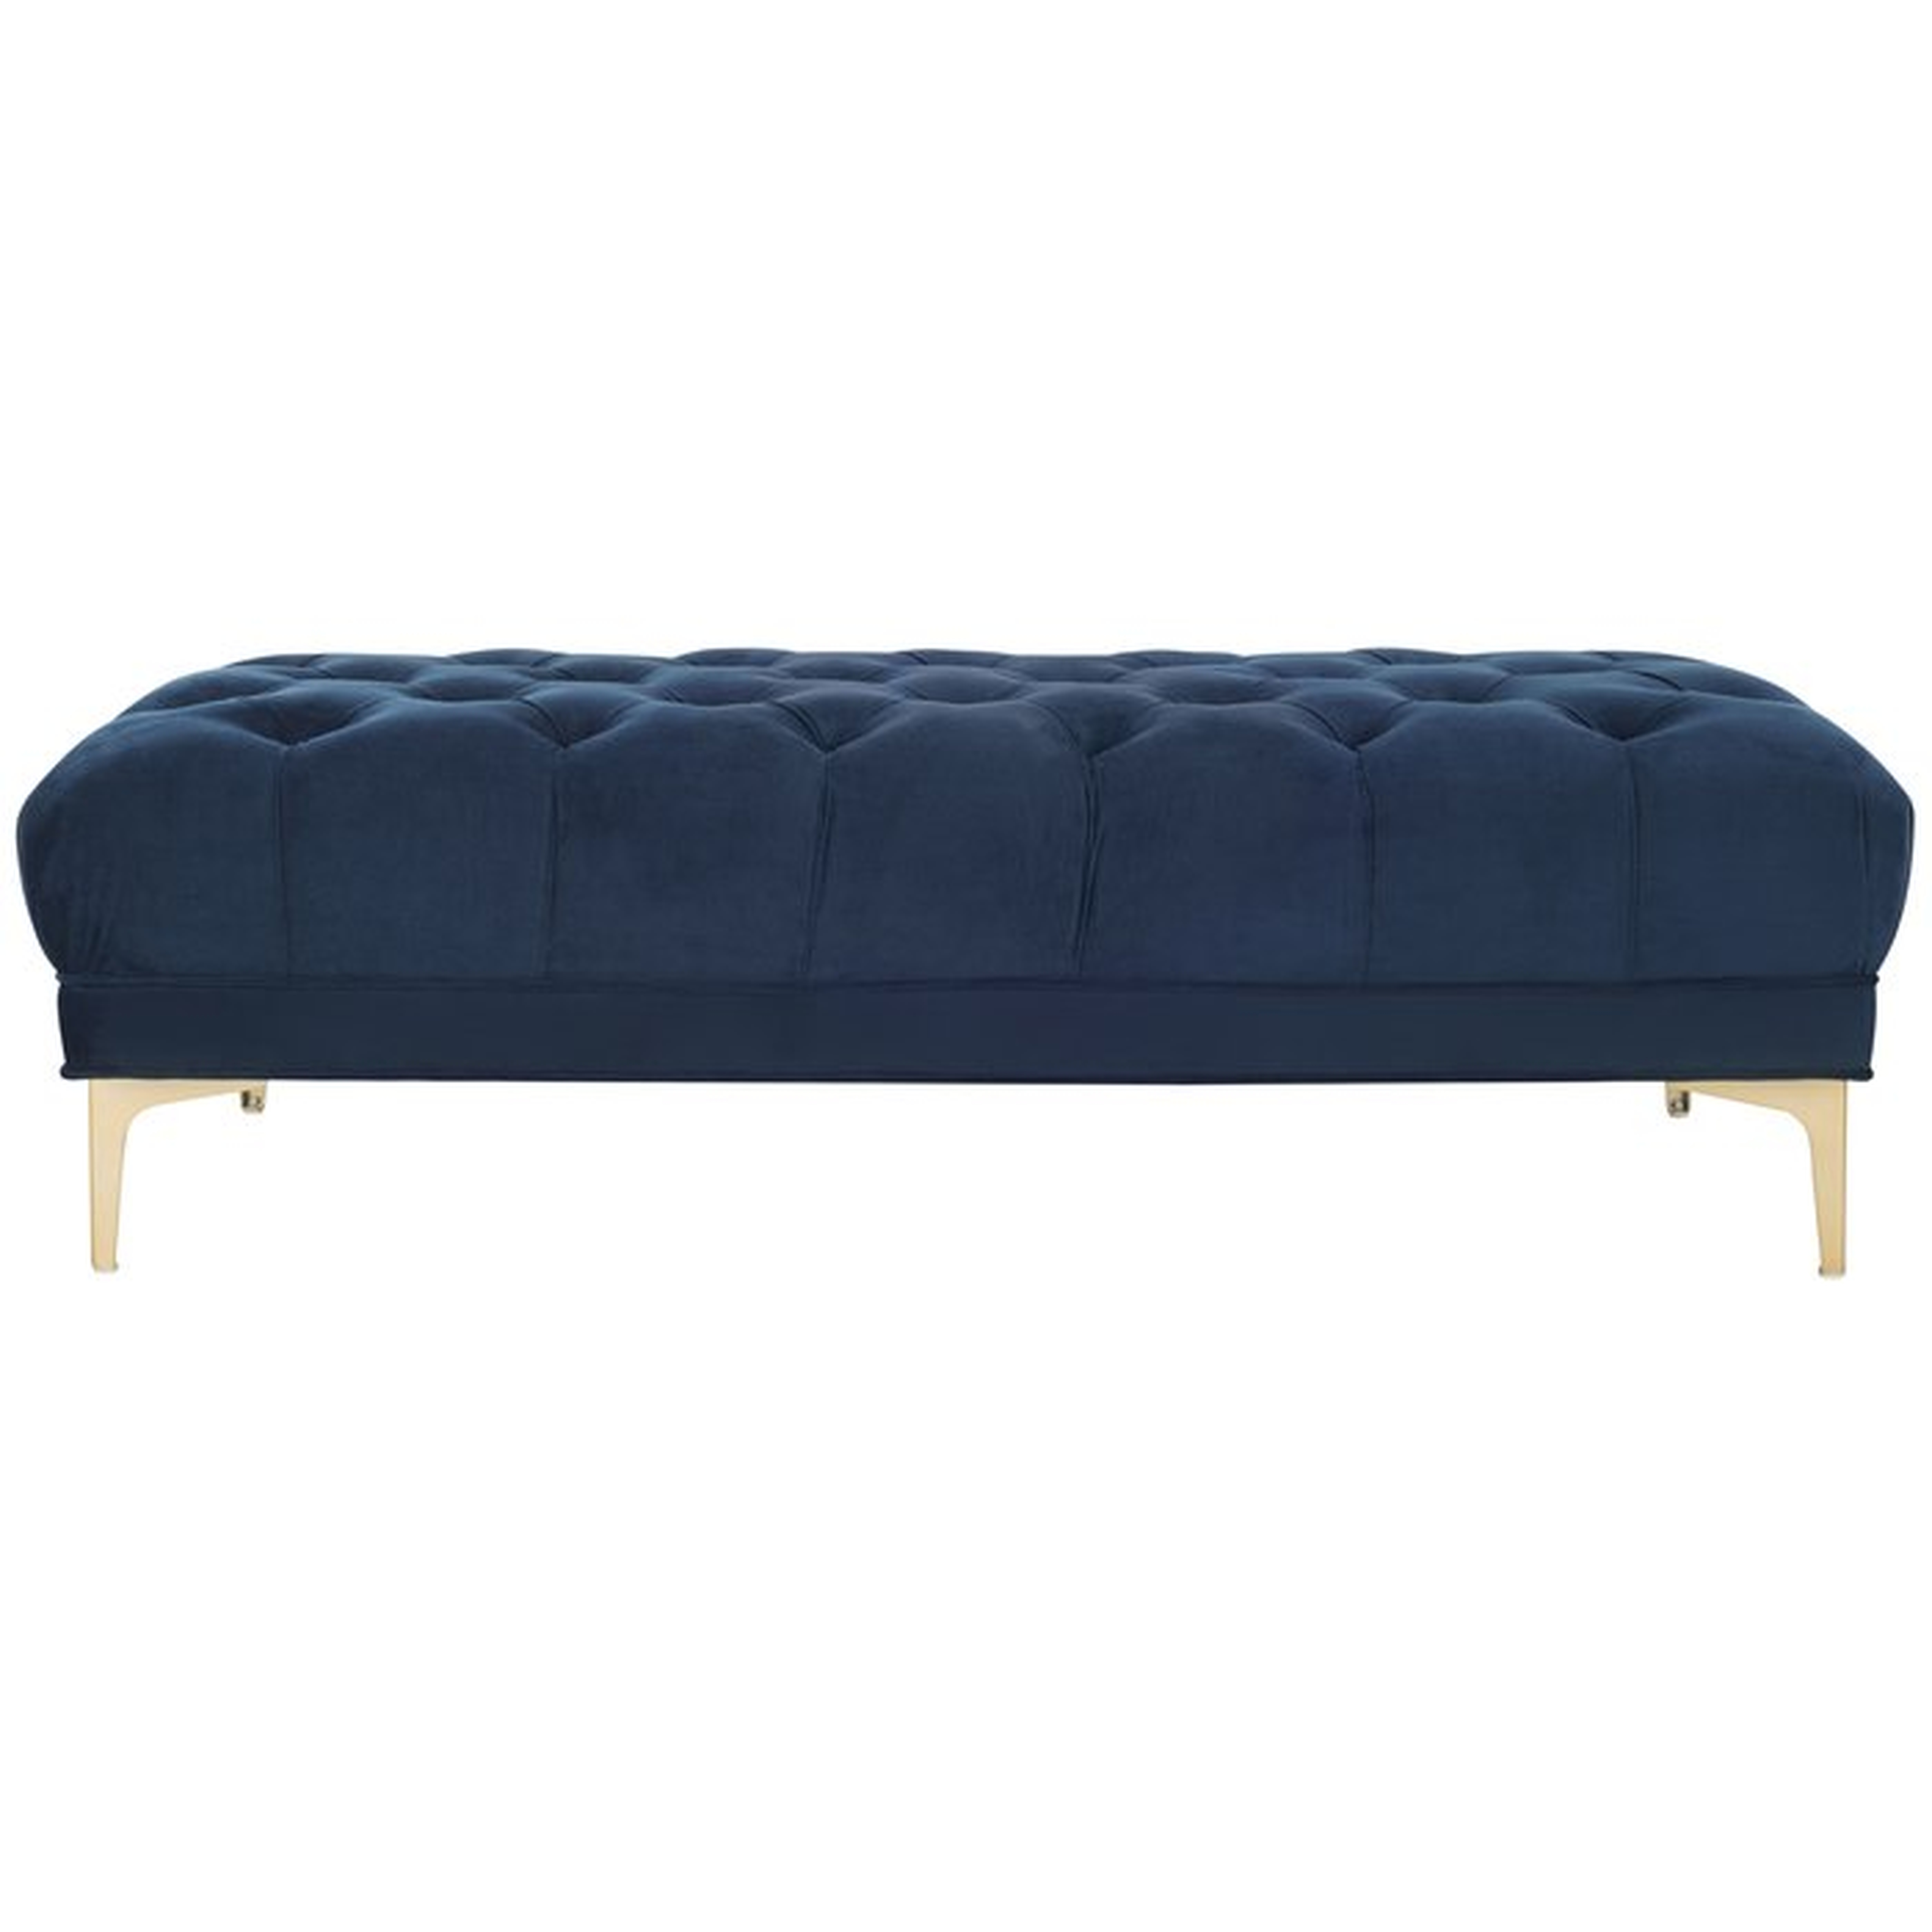 Kingsdown Upholstered Bench - AllModern